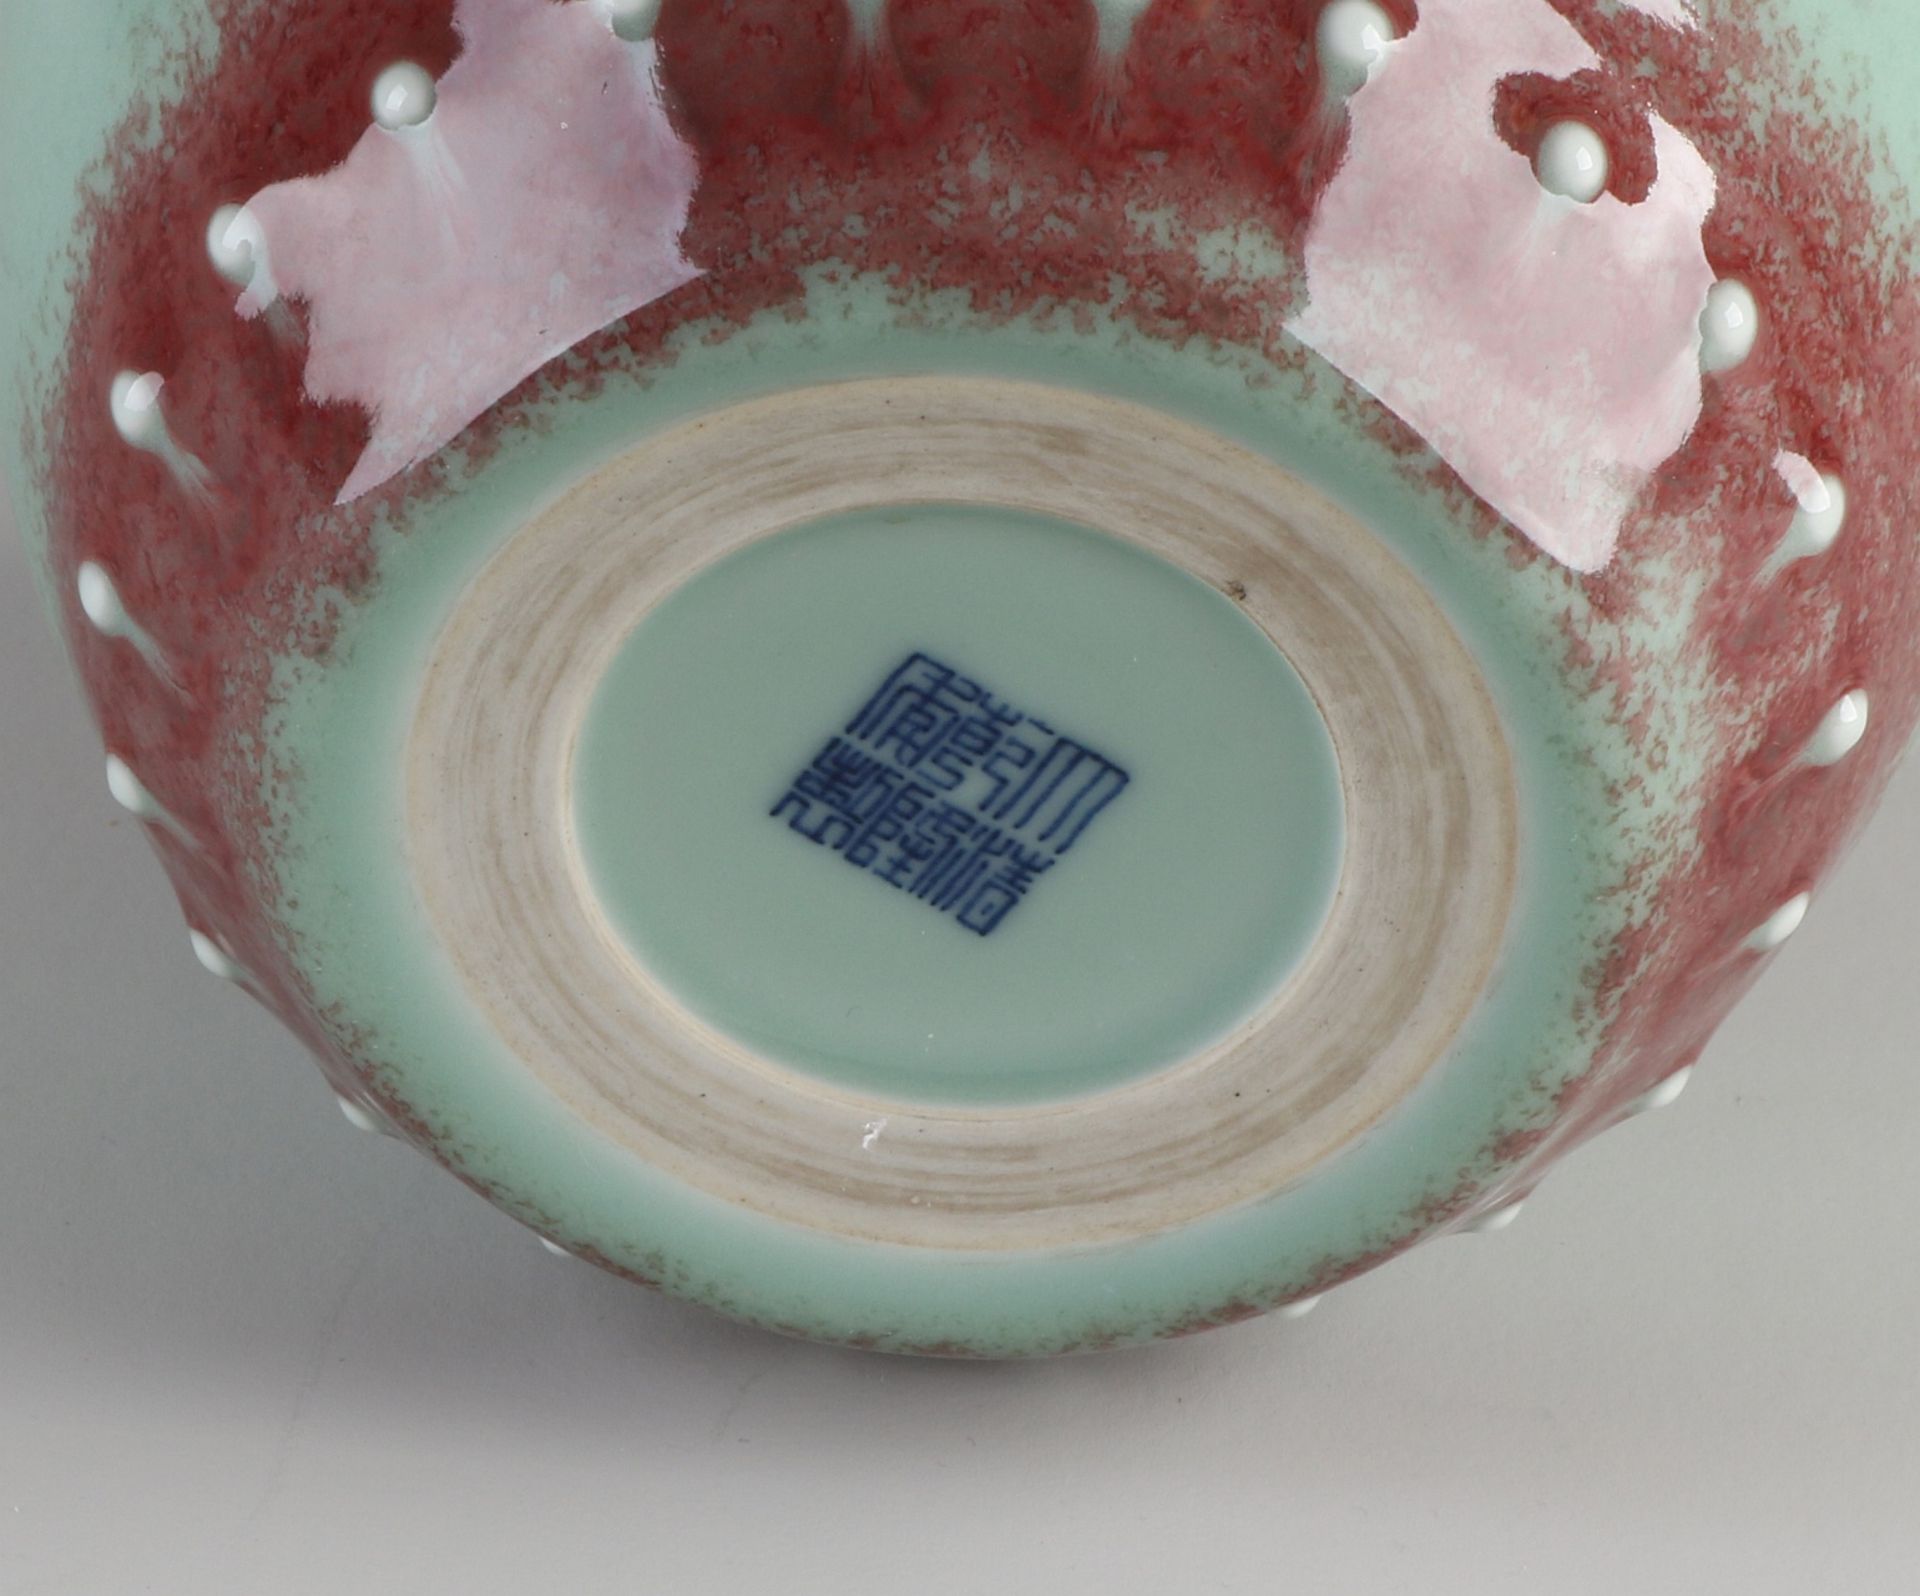 Chinesische Porzellanvase mit rotgrauer Glasur, Graten und Bodenmarkierung. Abmessungen: H 17 x Ø - Bild 3 aus 3